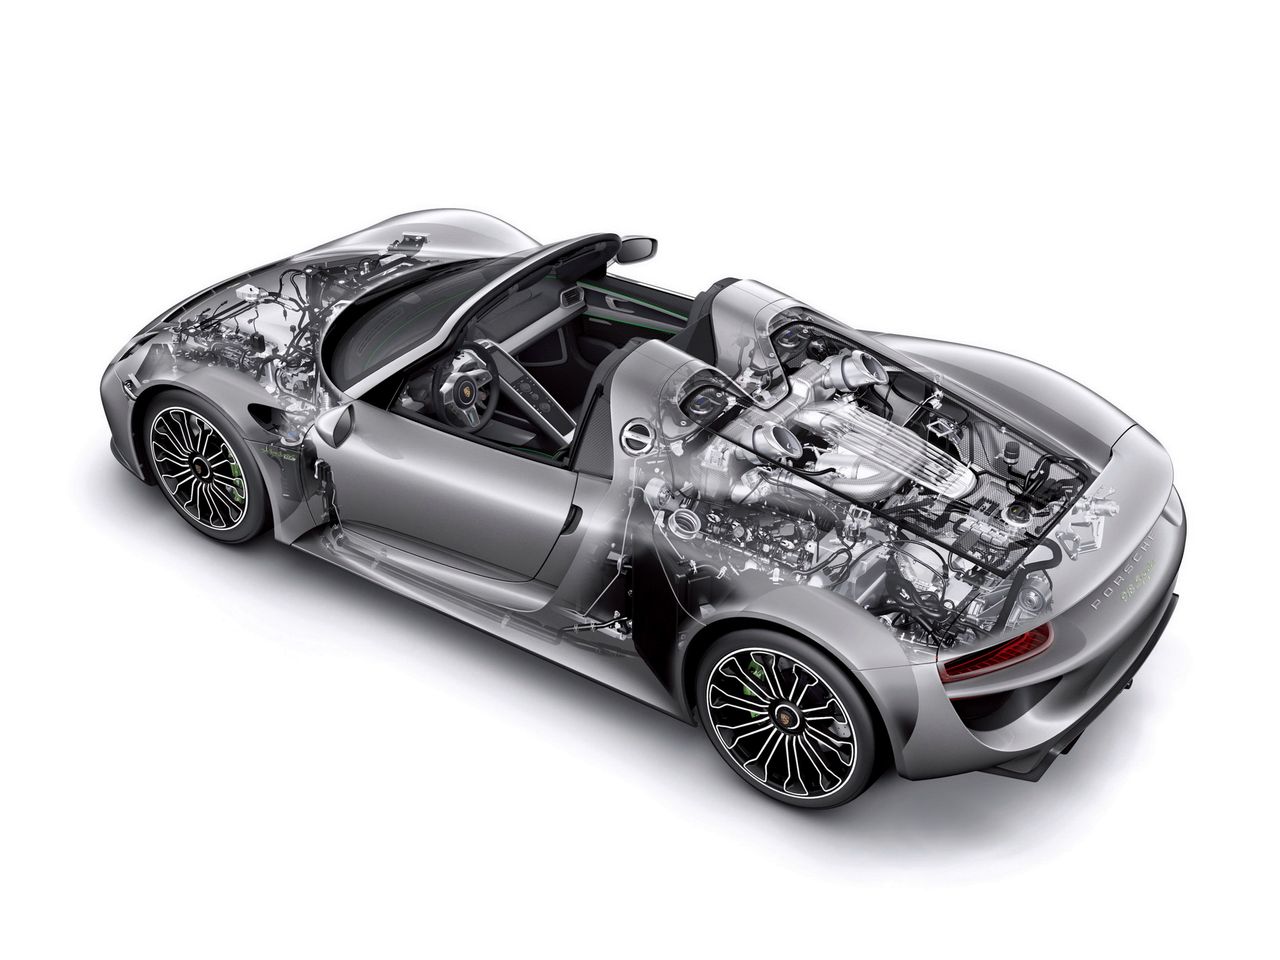 Porsche wyposażyło swoją superhybrydę w akumulatory o pojemności energetycznej wynoszącej 6,8 kWh. Mogą one zostać naładowane poprzez napęd spalinowy, który zużyje do tego 2 l paliwa, bądź w ciągu 25 minut poprzez ładowanie w stacji Speed Charging. W pełni naładowane akumulatory pozwalają przejechać 19 km.